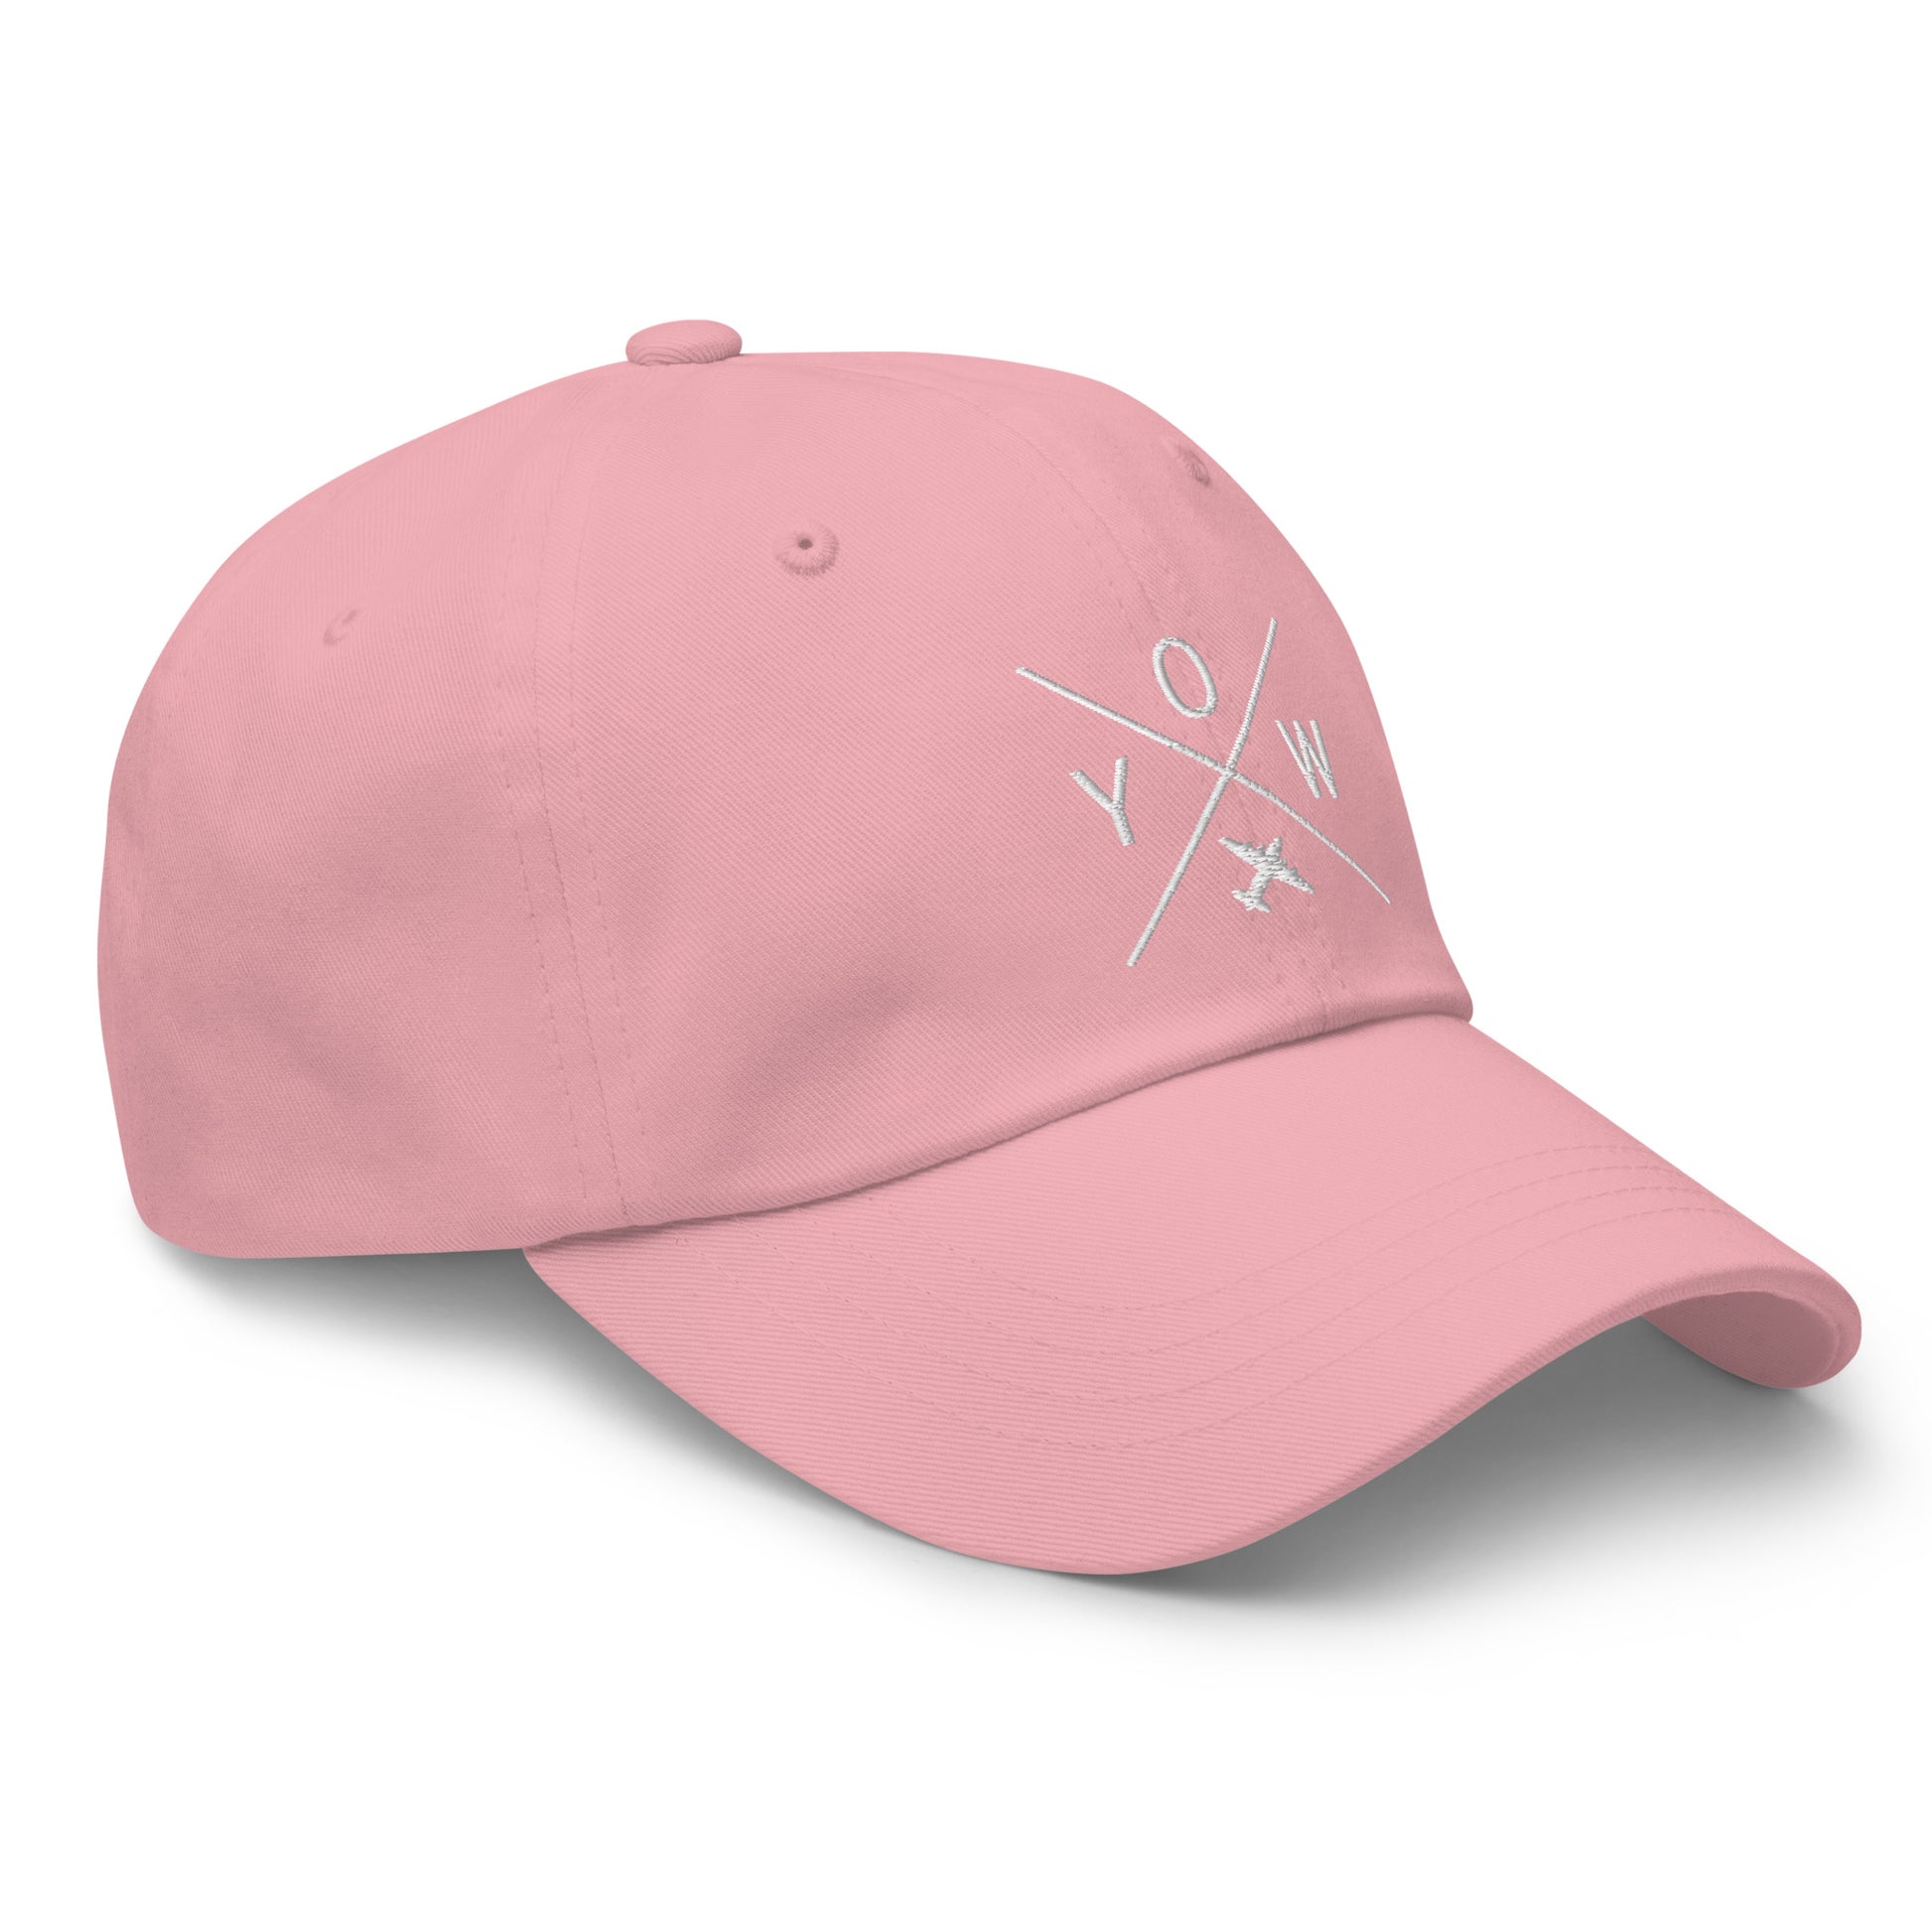 Crossed-X Dad Hat - White • YOW Ottawa • YHM Designs - Image 19